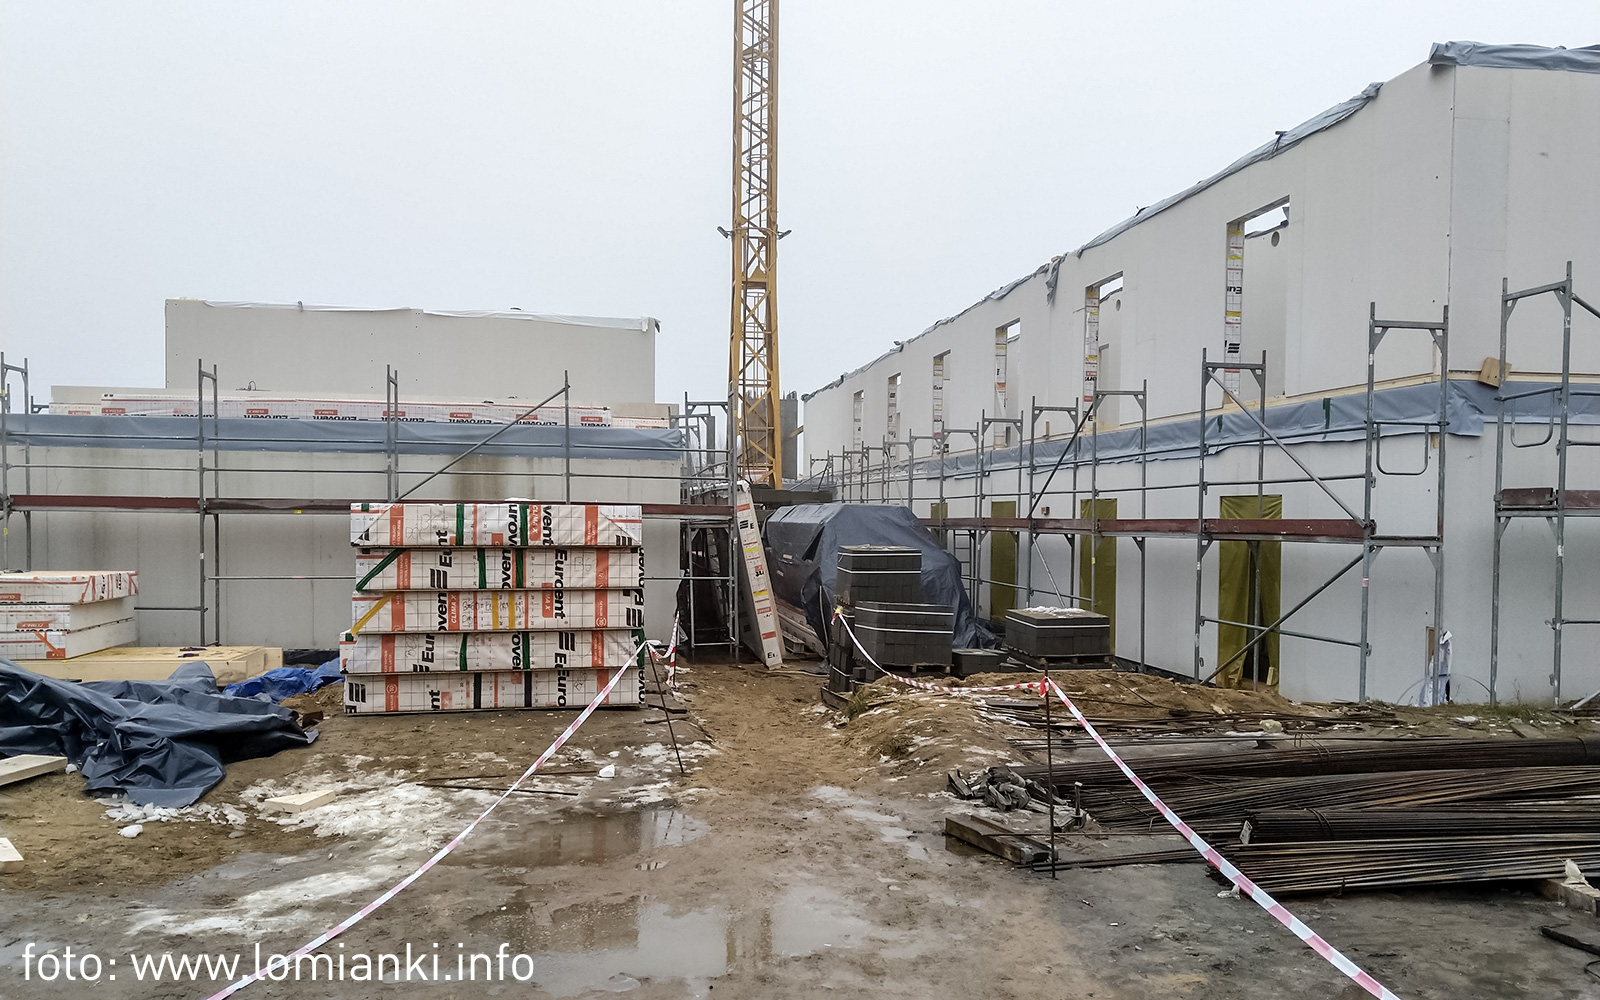 Szkoła w Sadowej - budowa trwa